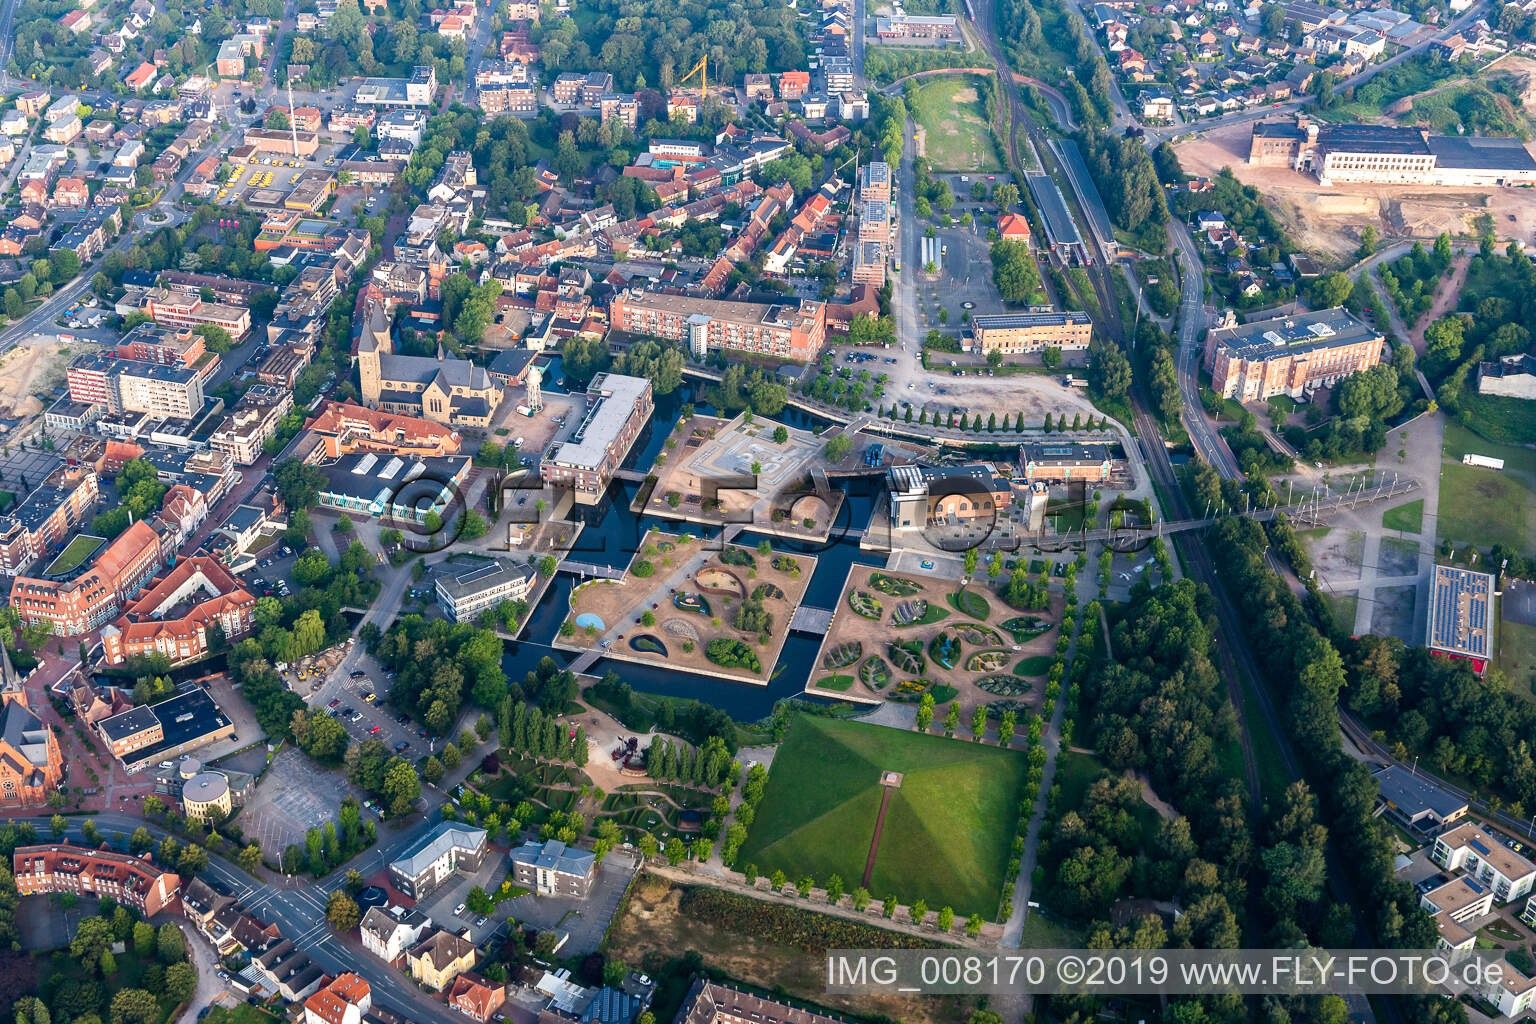 Aerial view of LAGA, rock'n'pop museum in Gronau in the state North Rhine-Westphalia, Germany